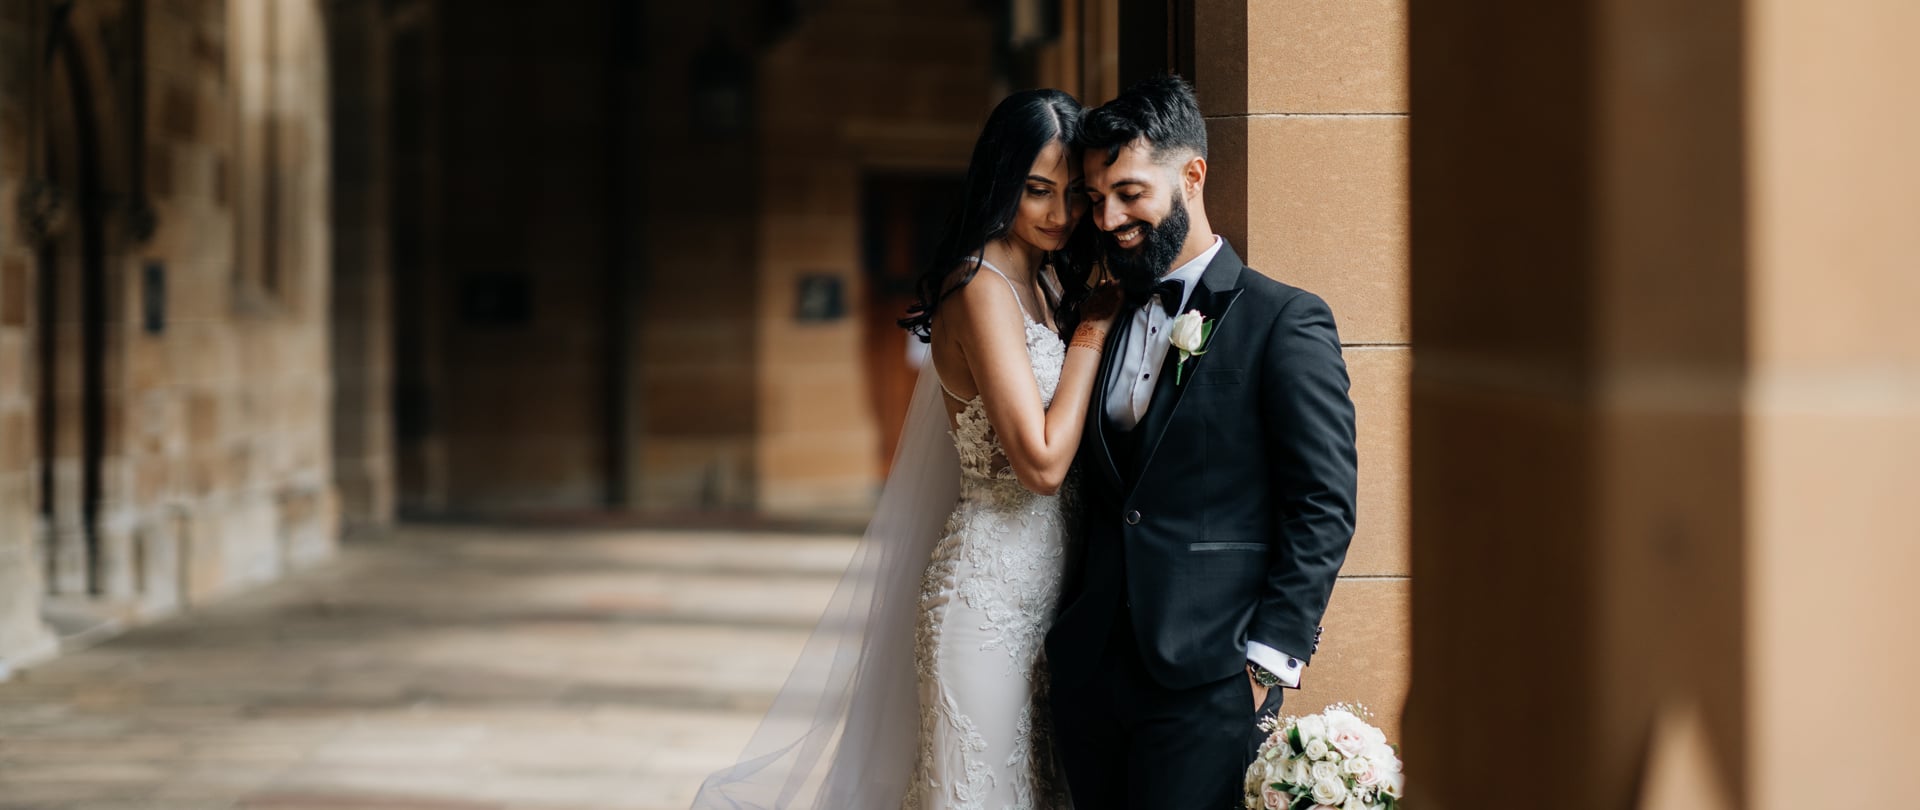 Jyotisha & Hayden Wedding Video Filmed at Sydney, New South Wales